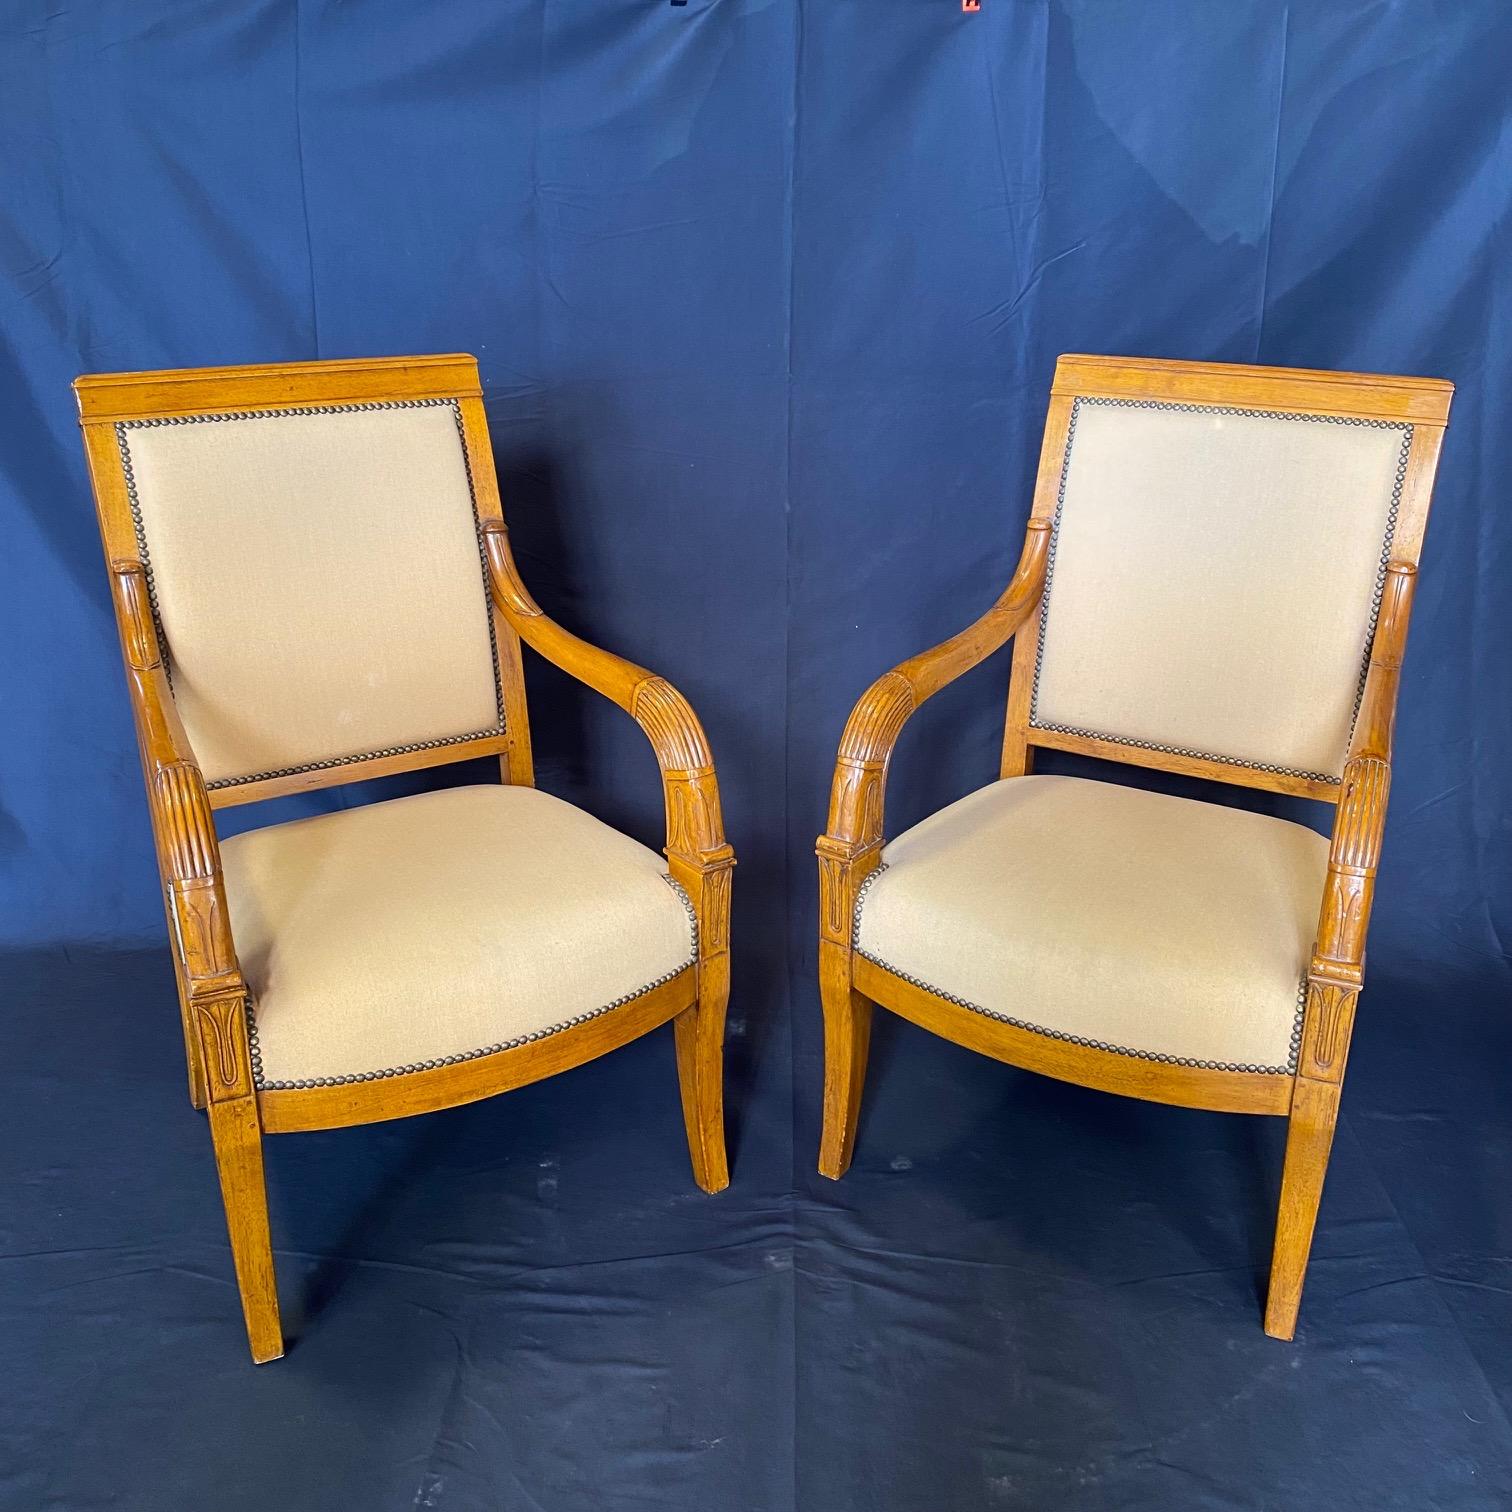 Cet ensemble de deux élégants fauteuils Empire se distingue par son design classique et simple et ses pieds avant joliment façonnés. Ces chaises confortables et élégantes sont dotées d'une grande qualité de fabrication, notamment de moulures